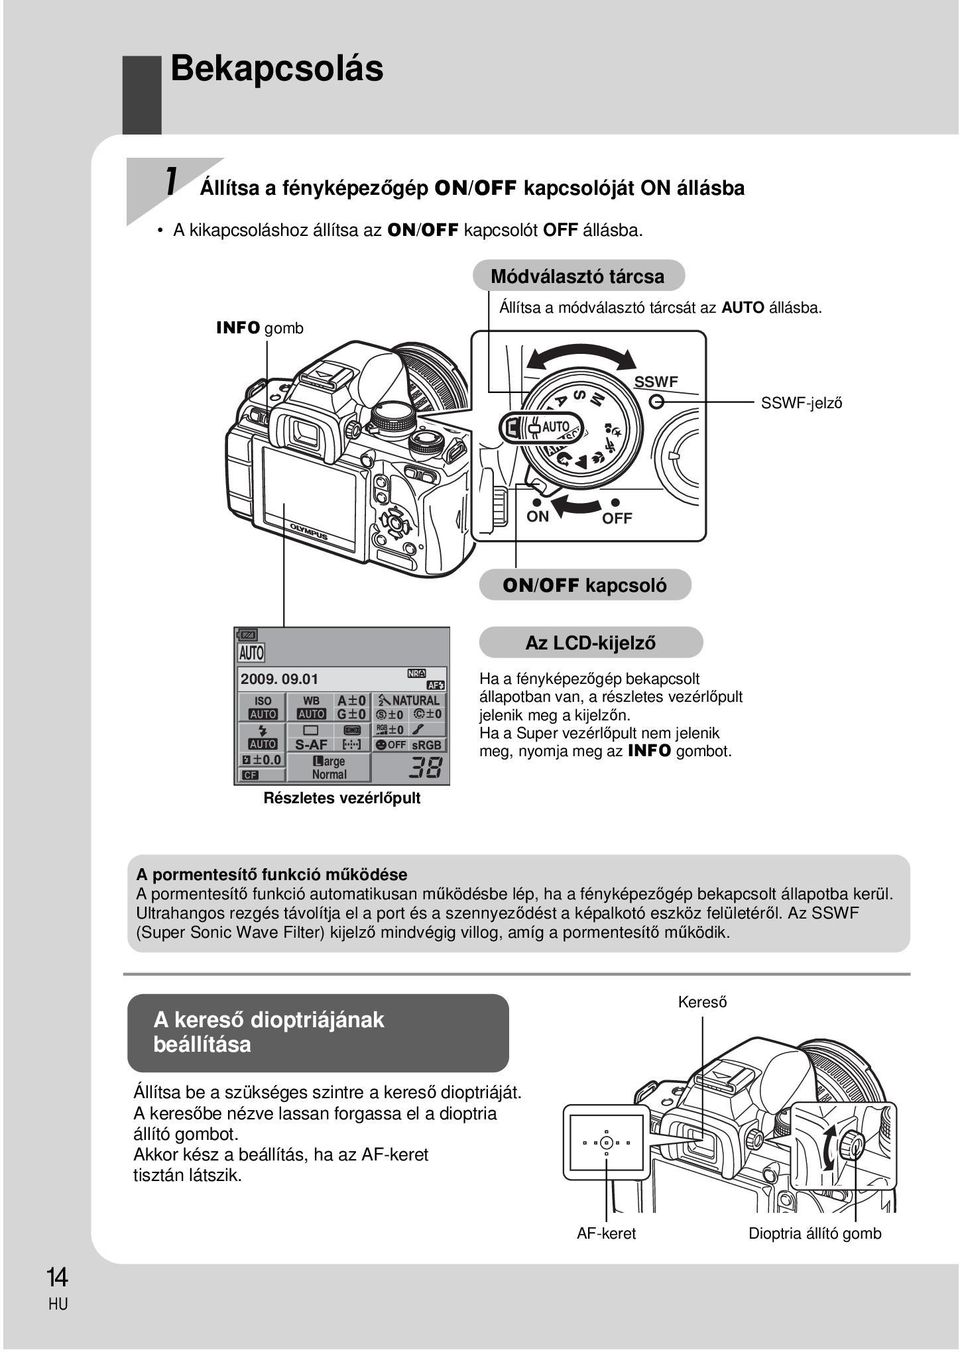 01 AF OFF arge Normal Részletes vezérlőpult Az LCD-kijelző Ha a fényképezőgép bekapcsolt állapotban van, a részletes vezérlőpult jelenik meg a kijelzőn.